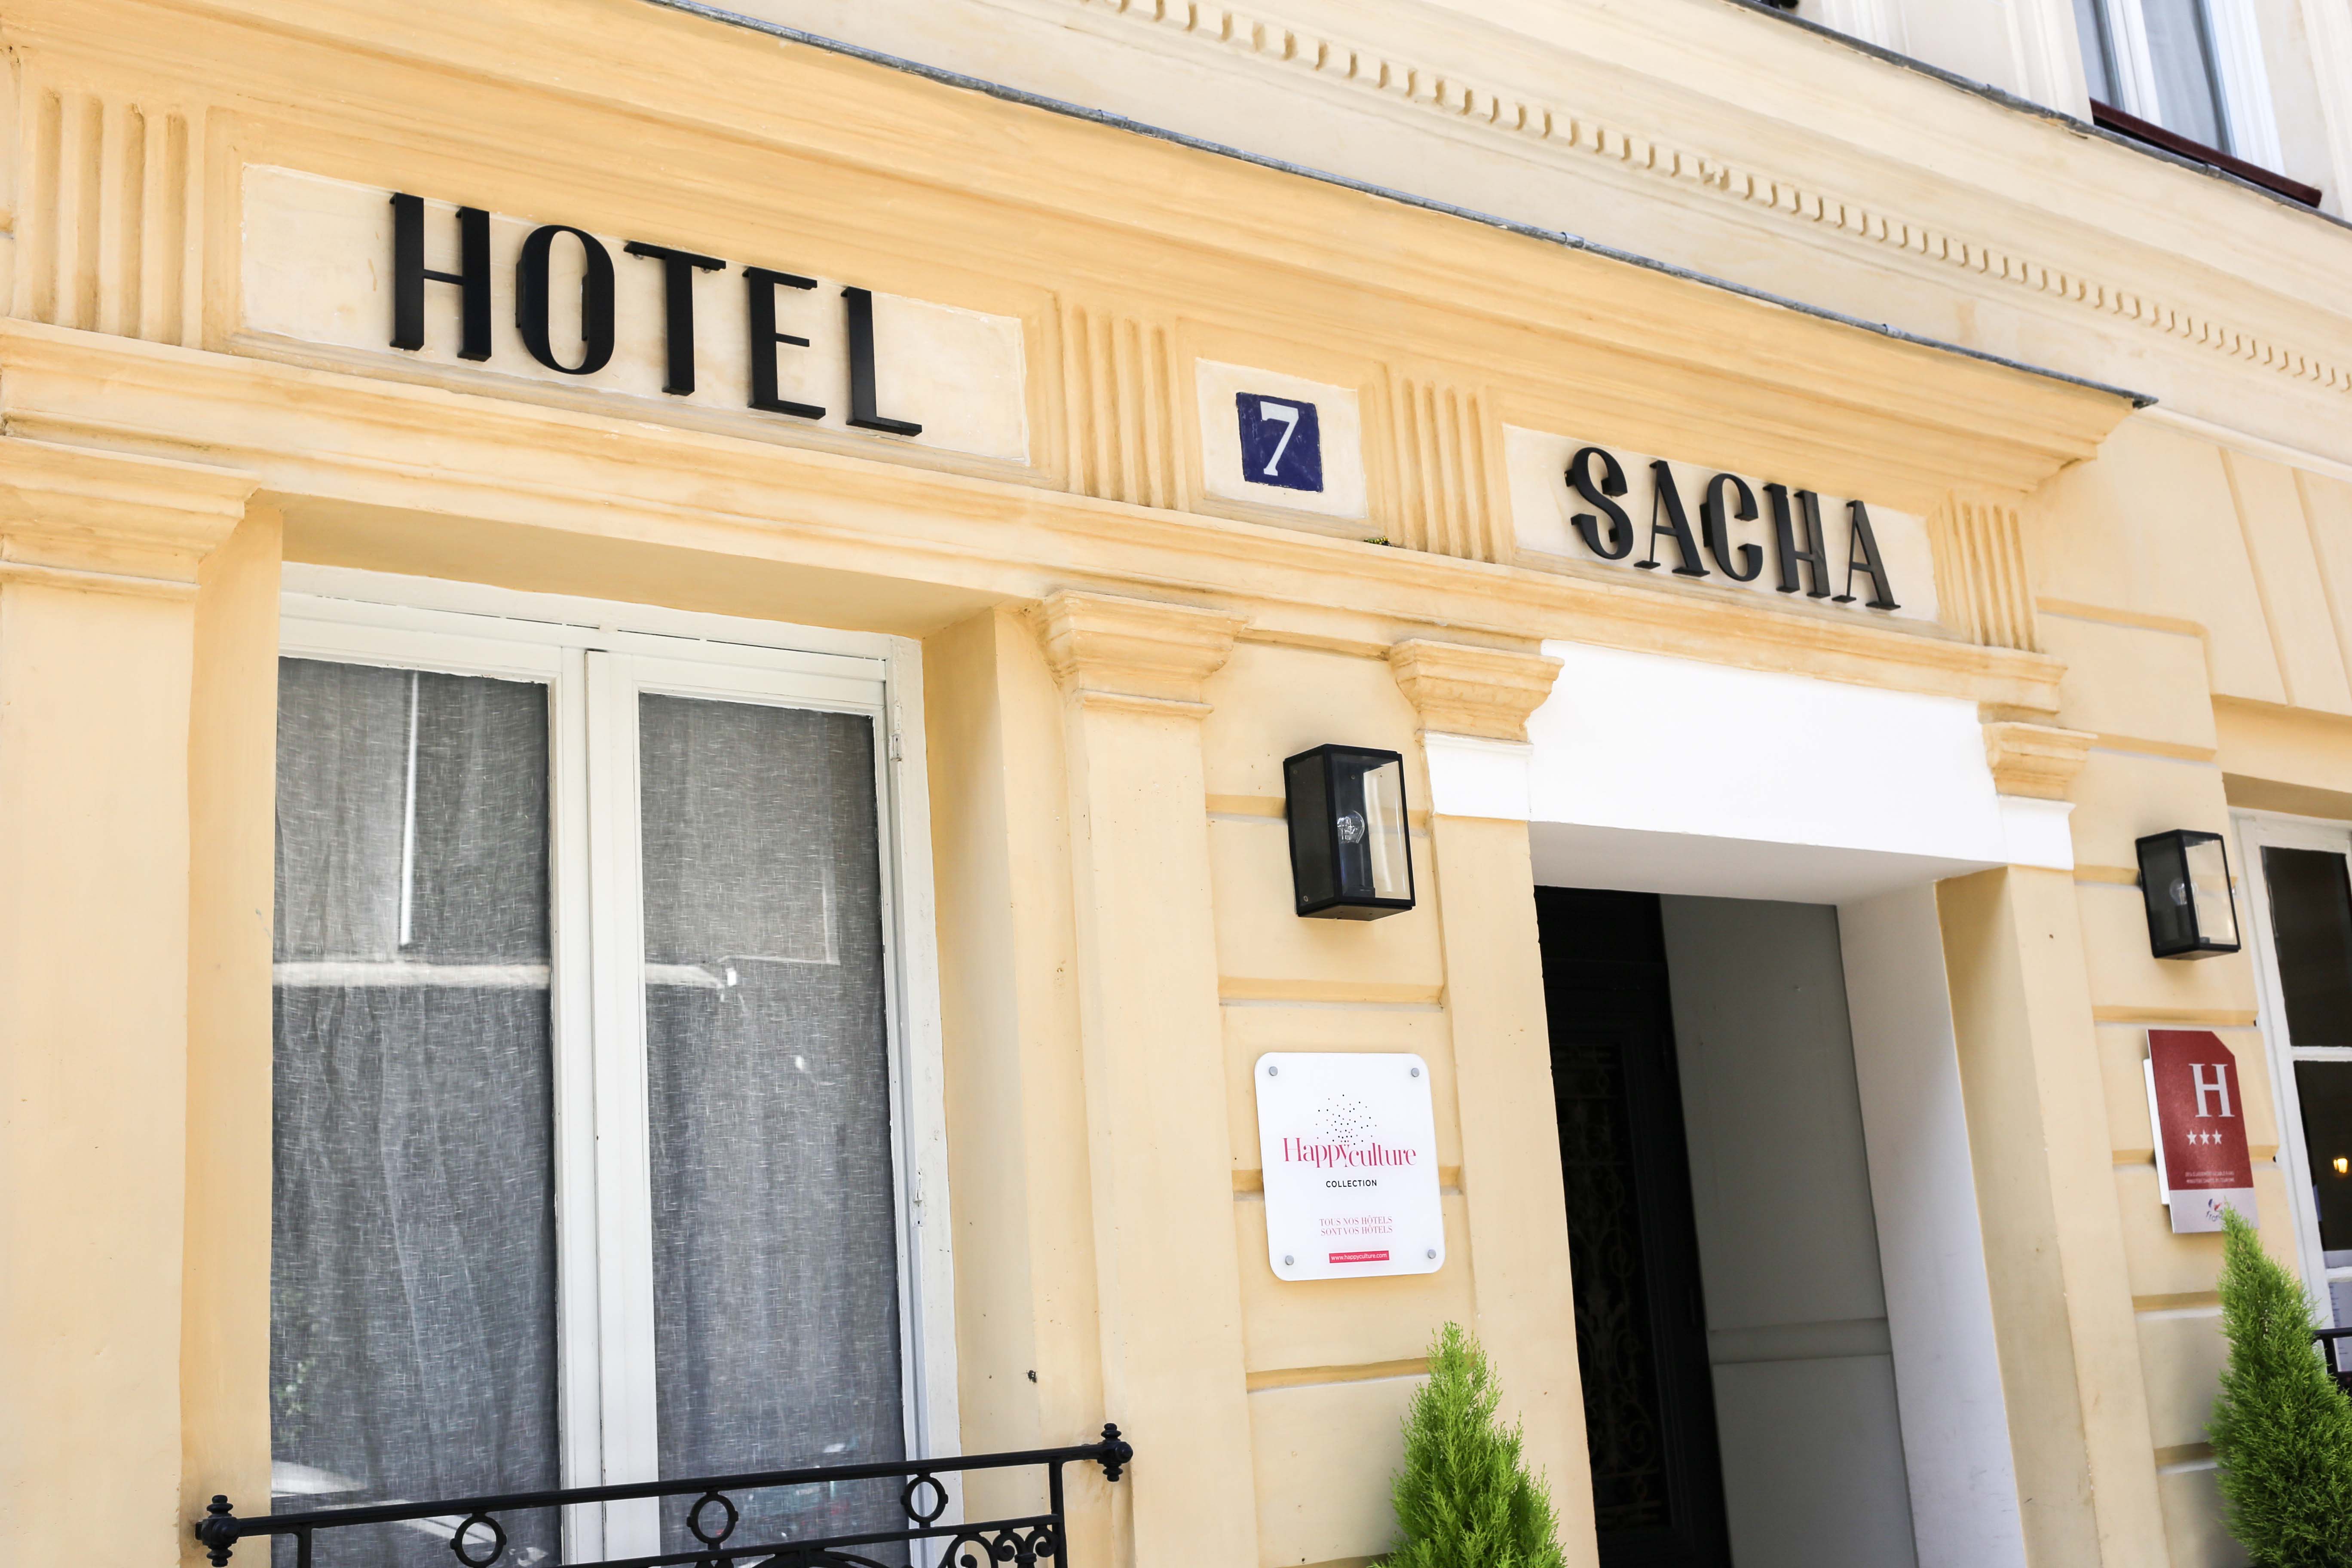 hotel-sacha-happy-culture-montmartre-paris-3-sterne-empfehlung-review-reiseblog-travelblog-blogger_2143